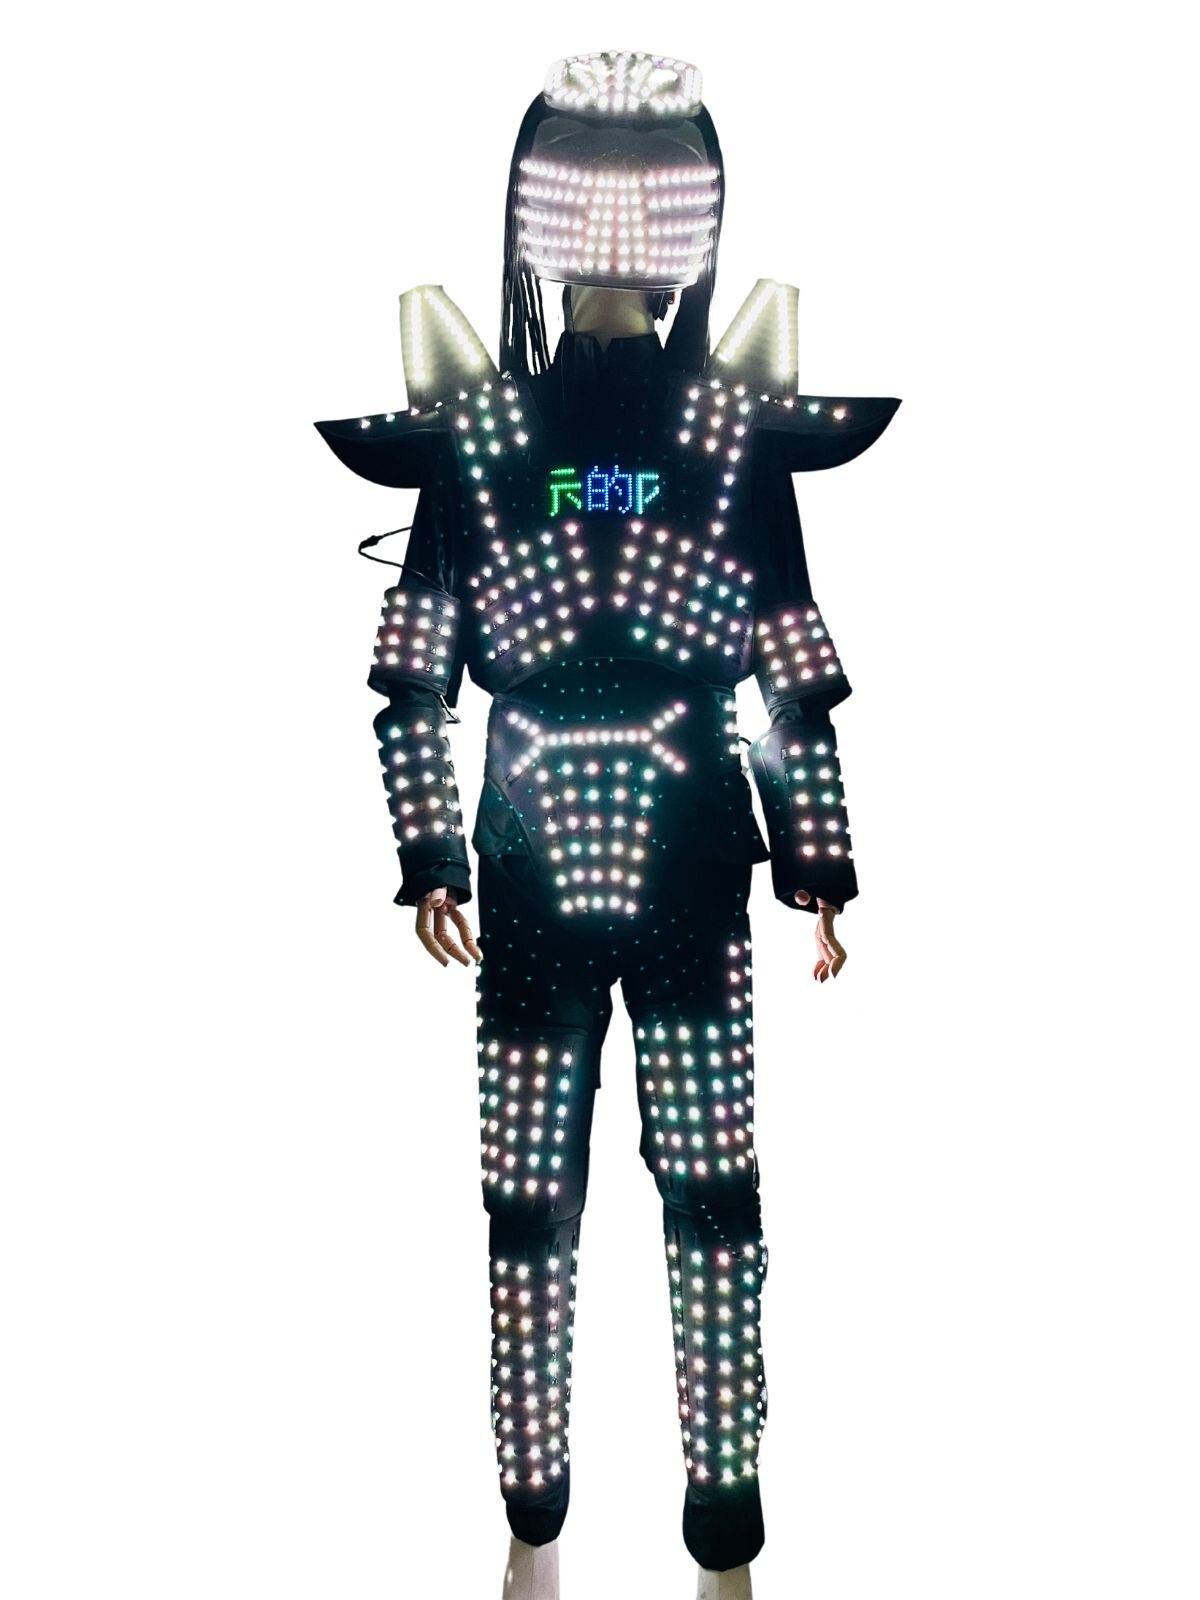 ナイトクラブのダンスショーの衣装を照らす新しいLEDロボットスーツ